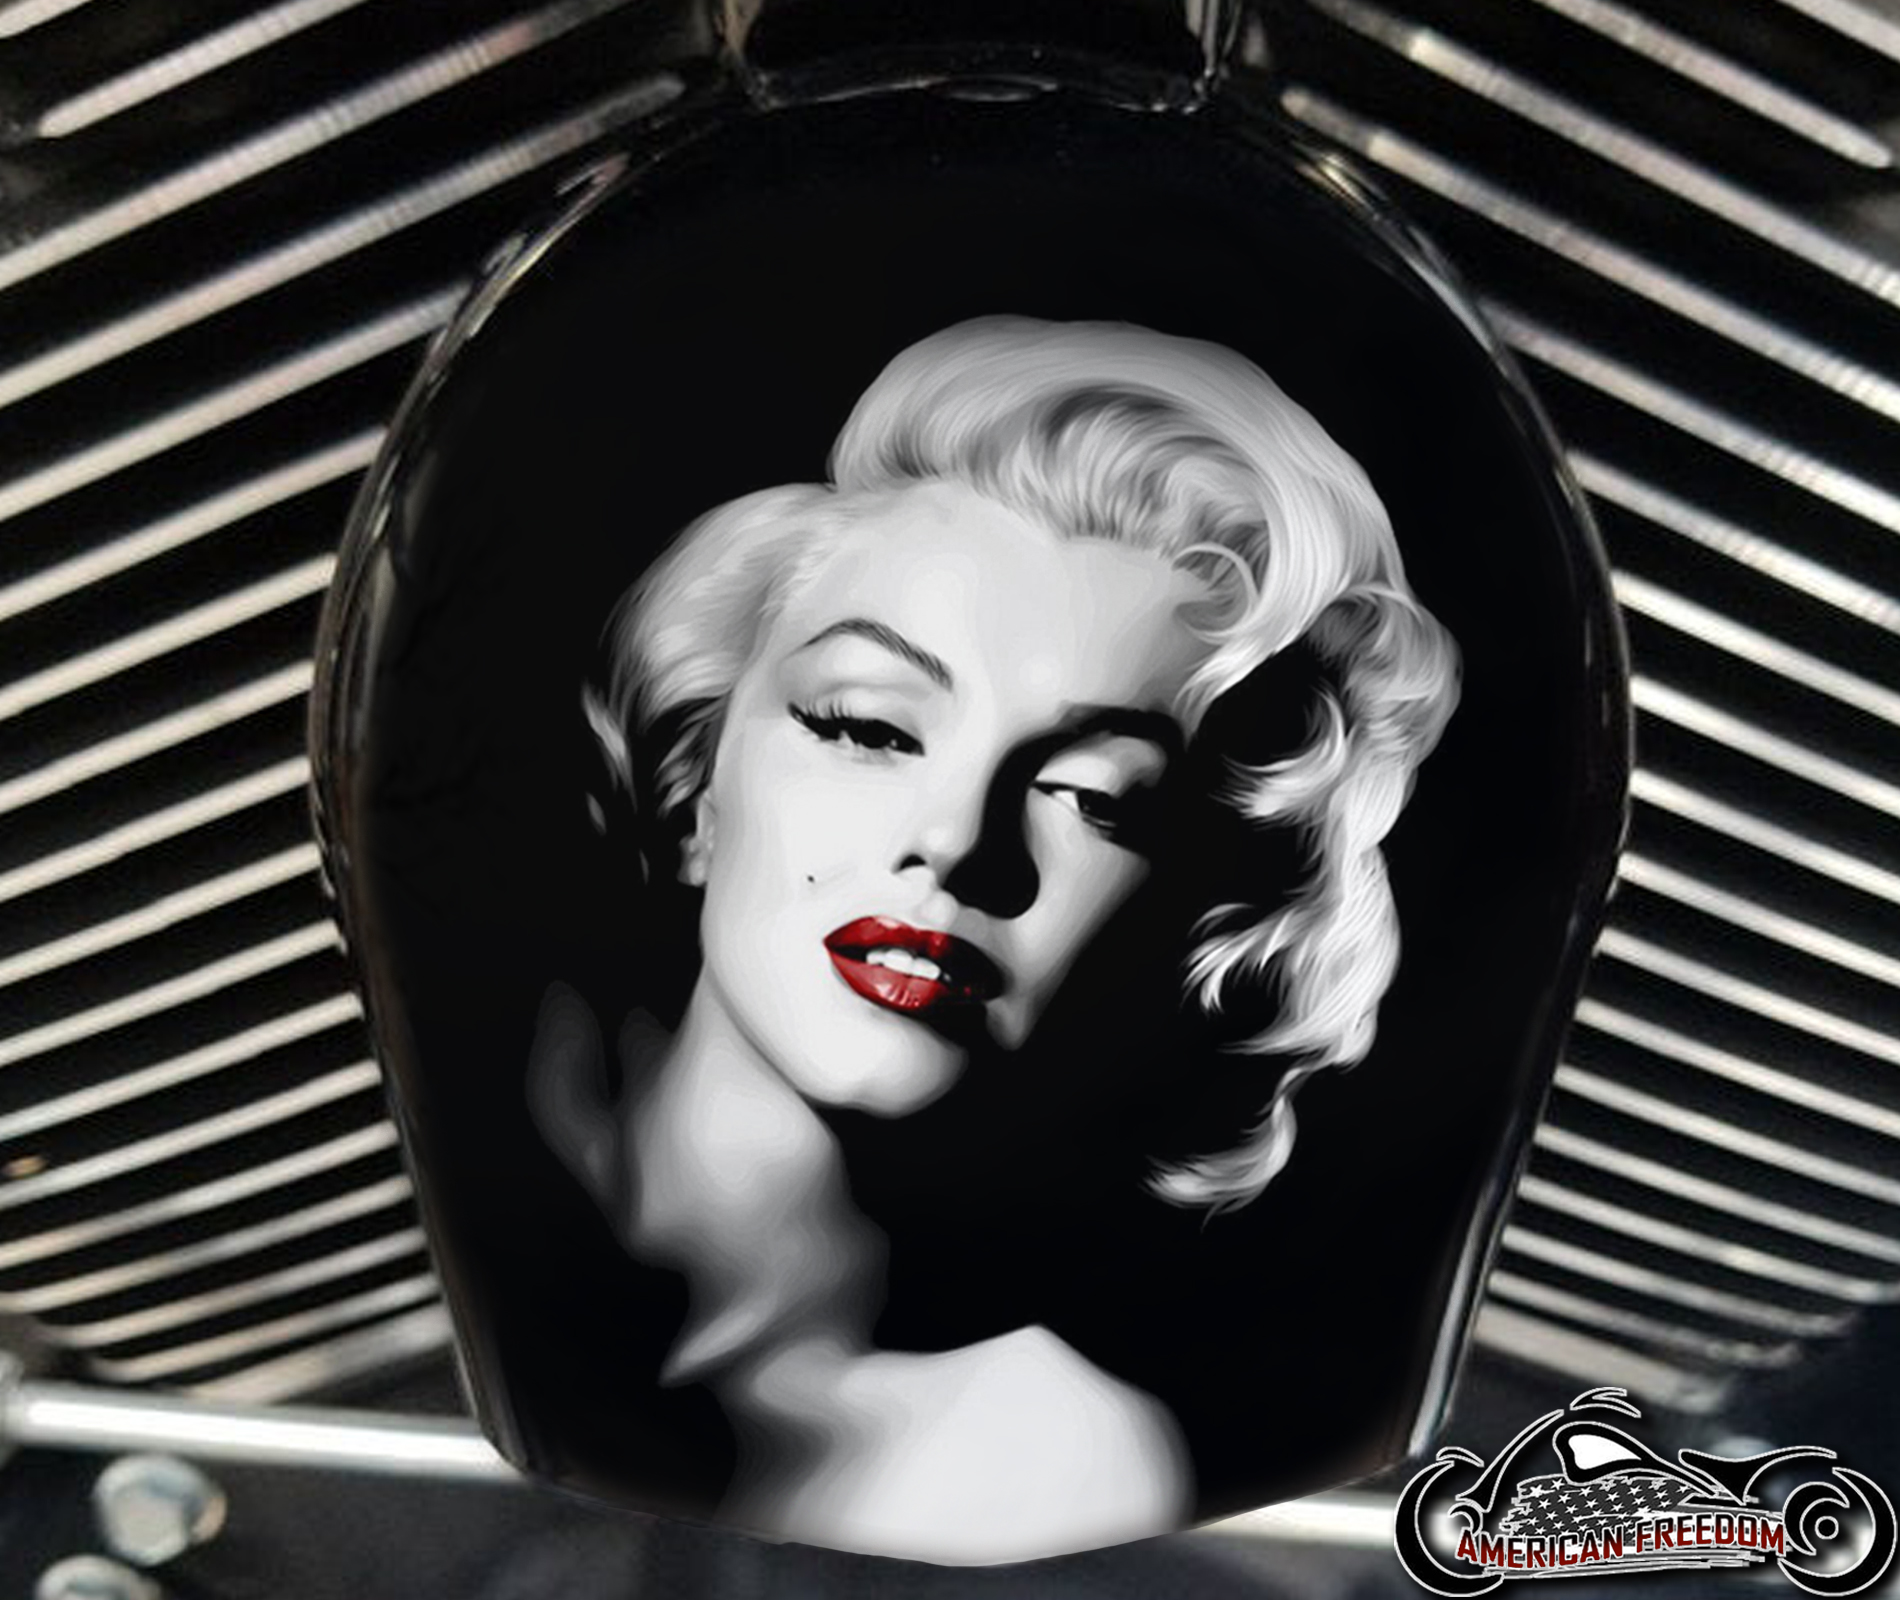 Custom Horn Cover - Marilyn Monroe Red Lips